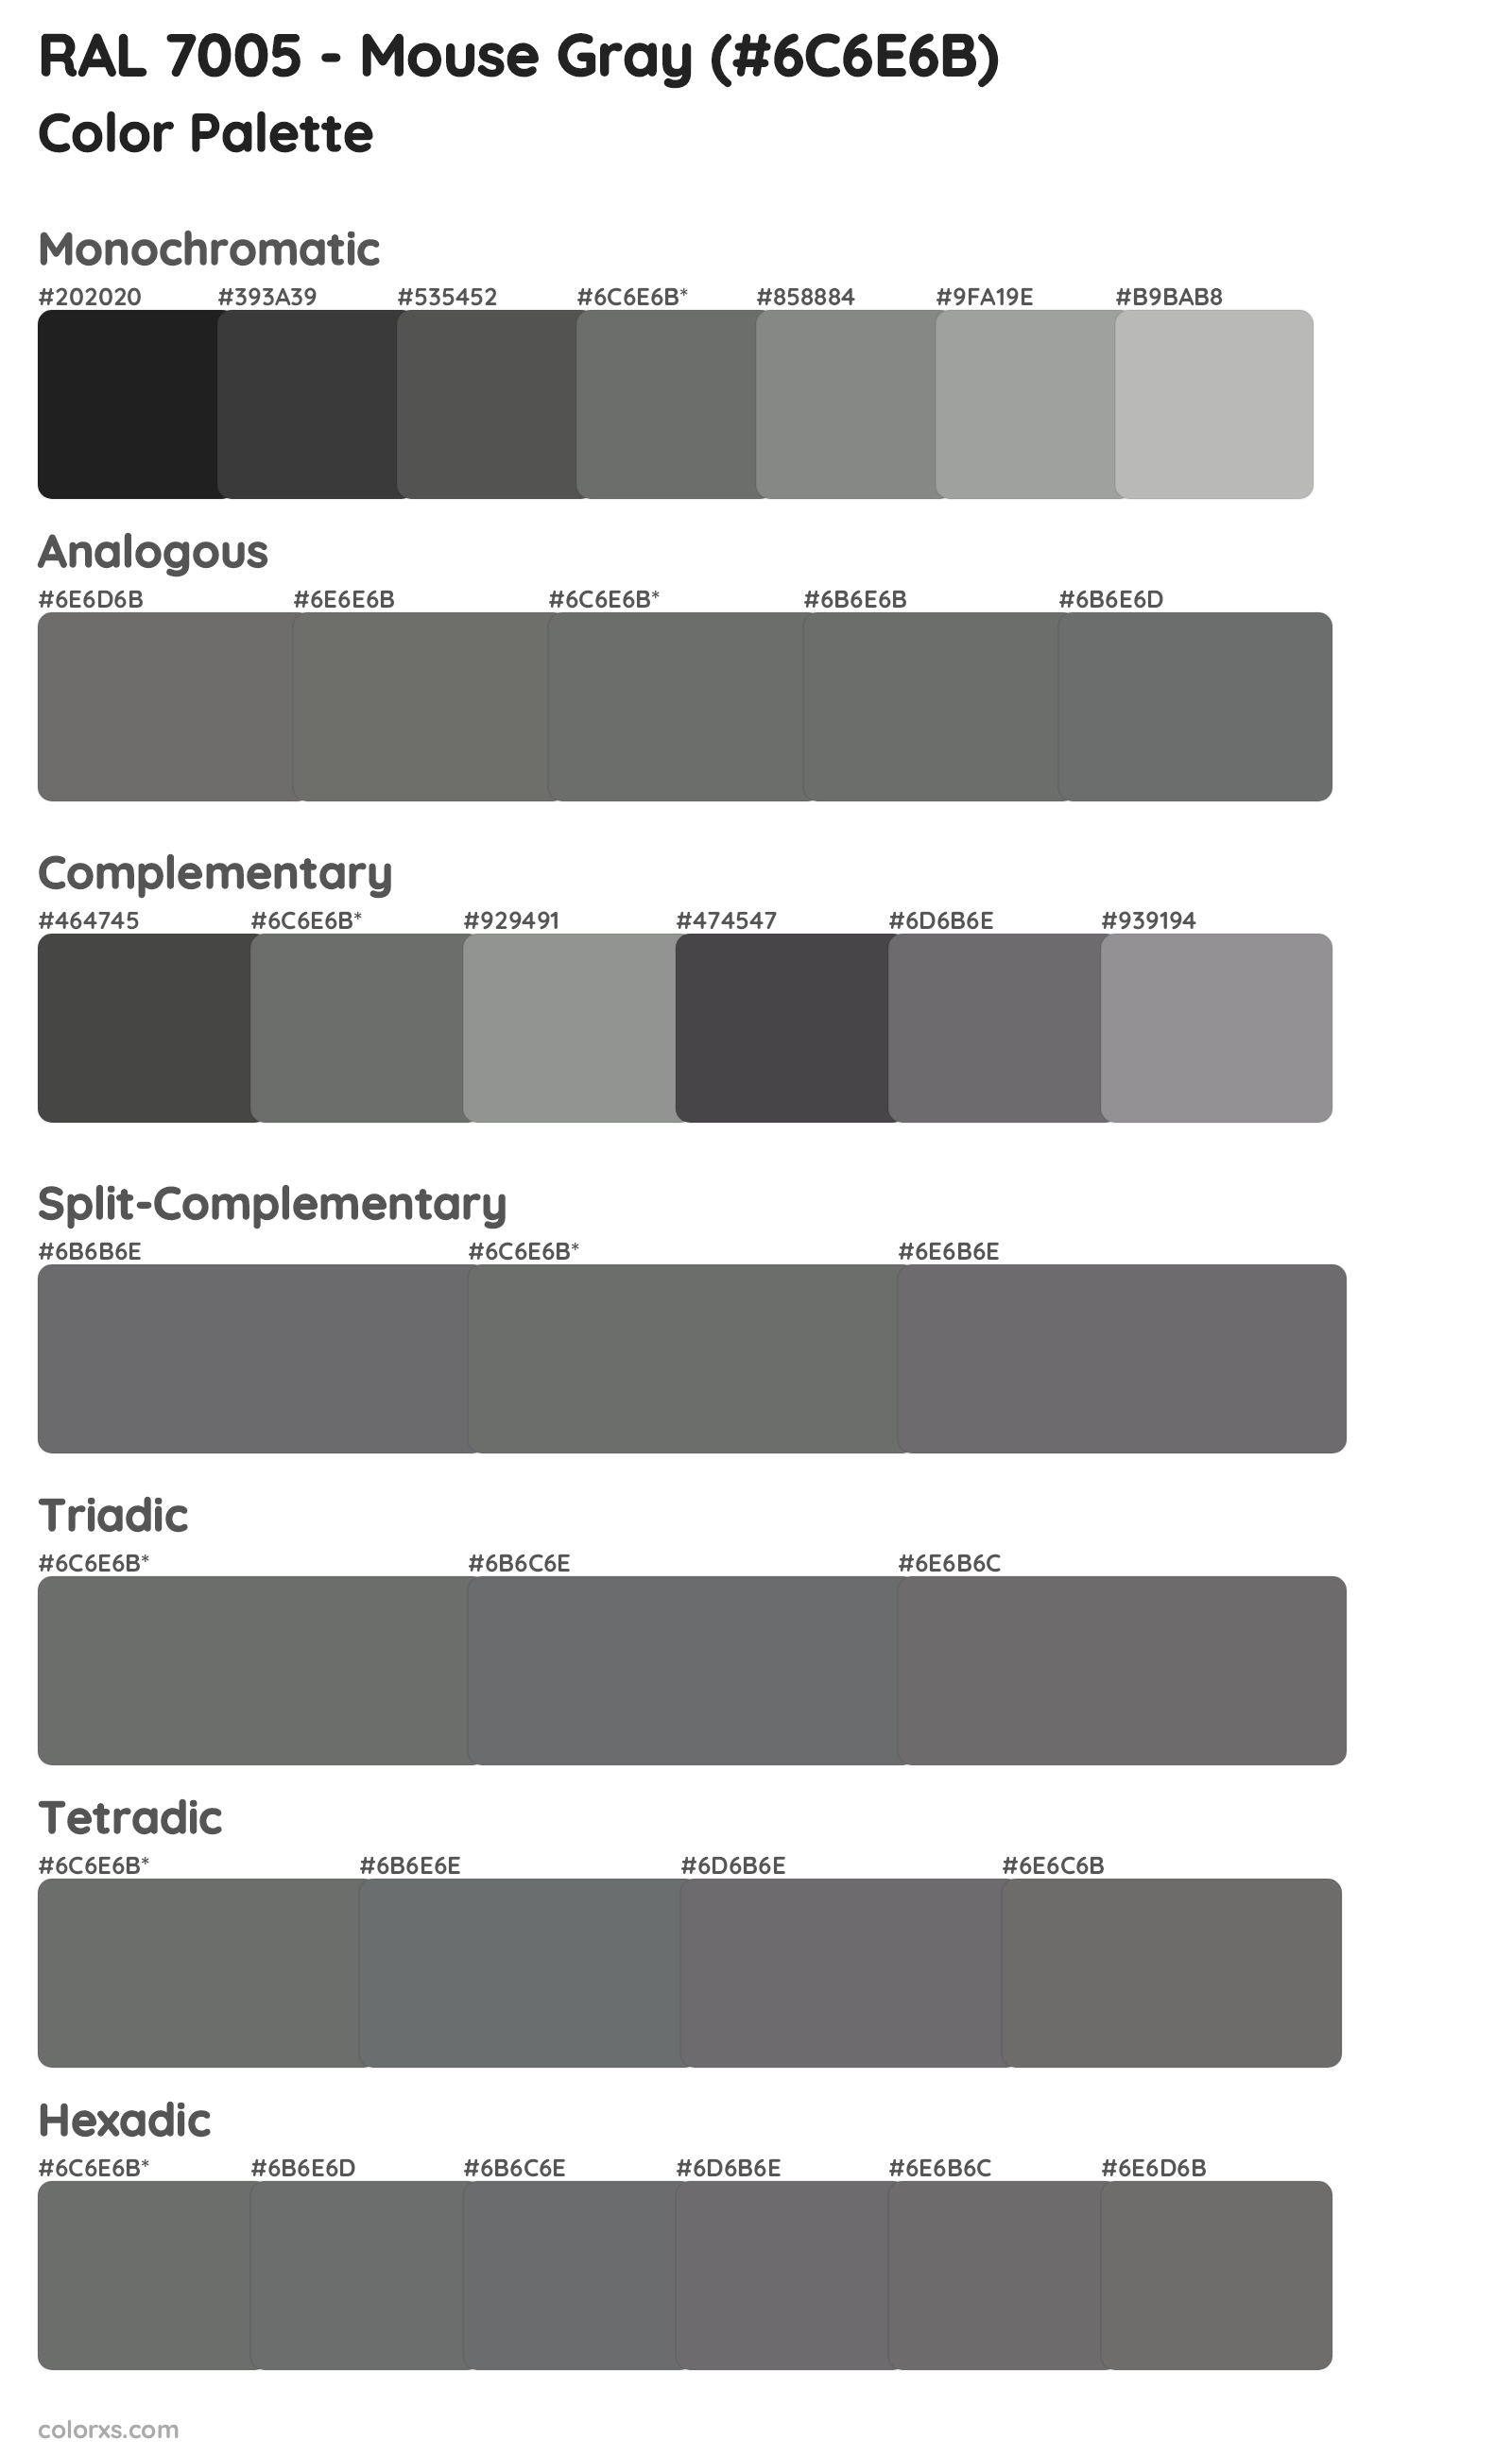 RAL 7005 - Mouse Gray Color Scheme Palettes